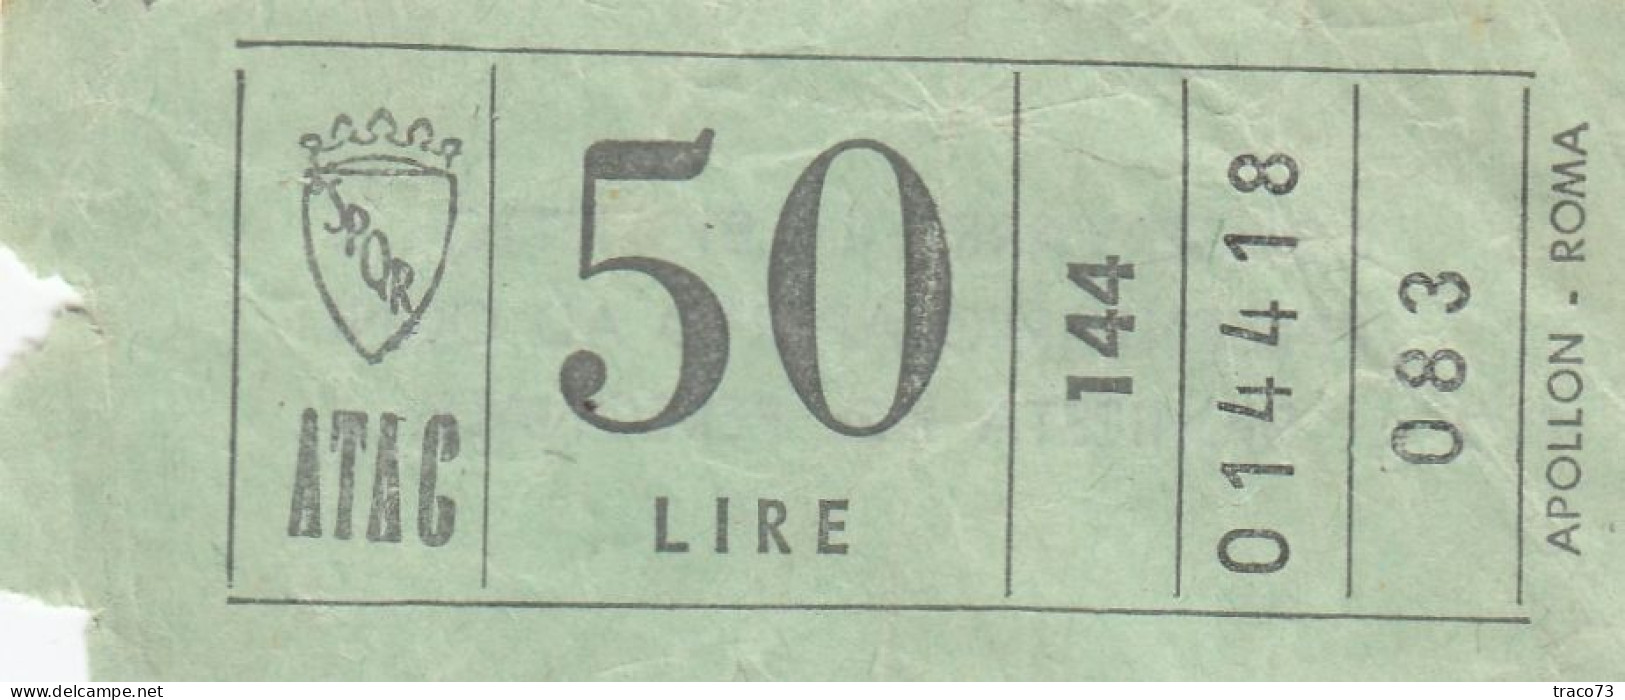 ATAC - ROMA  _ Anni '50-'60 /  Ticket  _ Biglietto Da Lire 50 - Europa